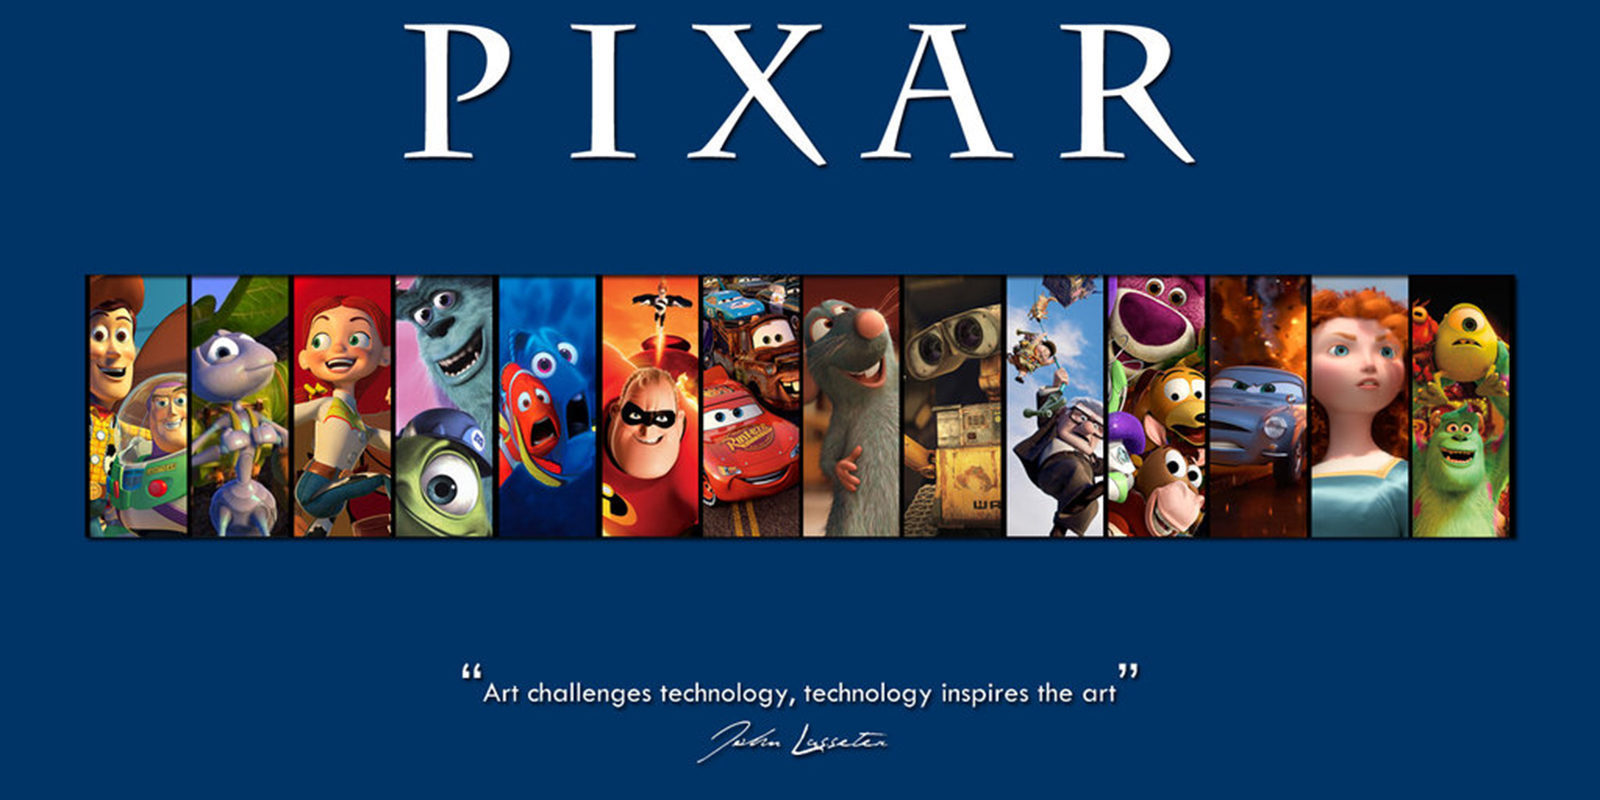 Las 17 películas de Disney Pixar, ordenadas de peor a mejor